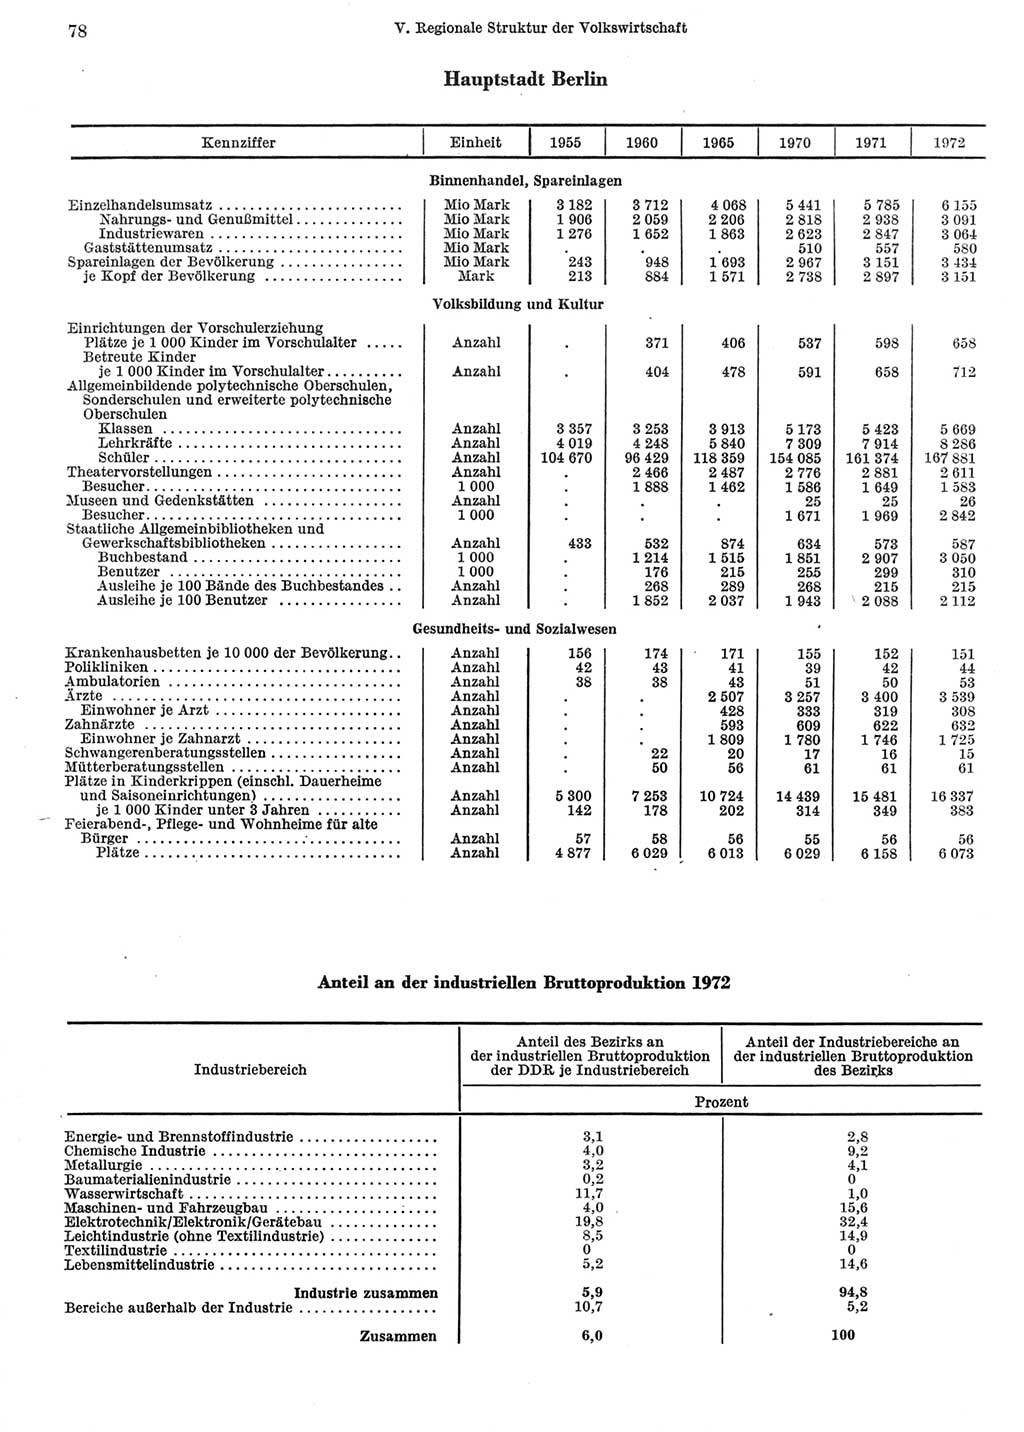 Statistisches Jahrbuch der Deutschen Demokratischen Republik (DDR) 1973, Seite 78 (Stat. Jb. DDR 1973, S. 78)